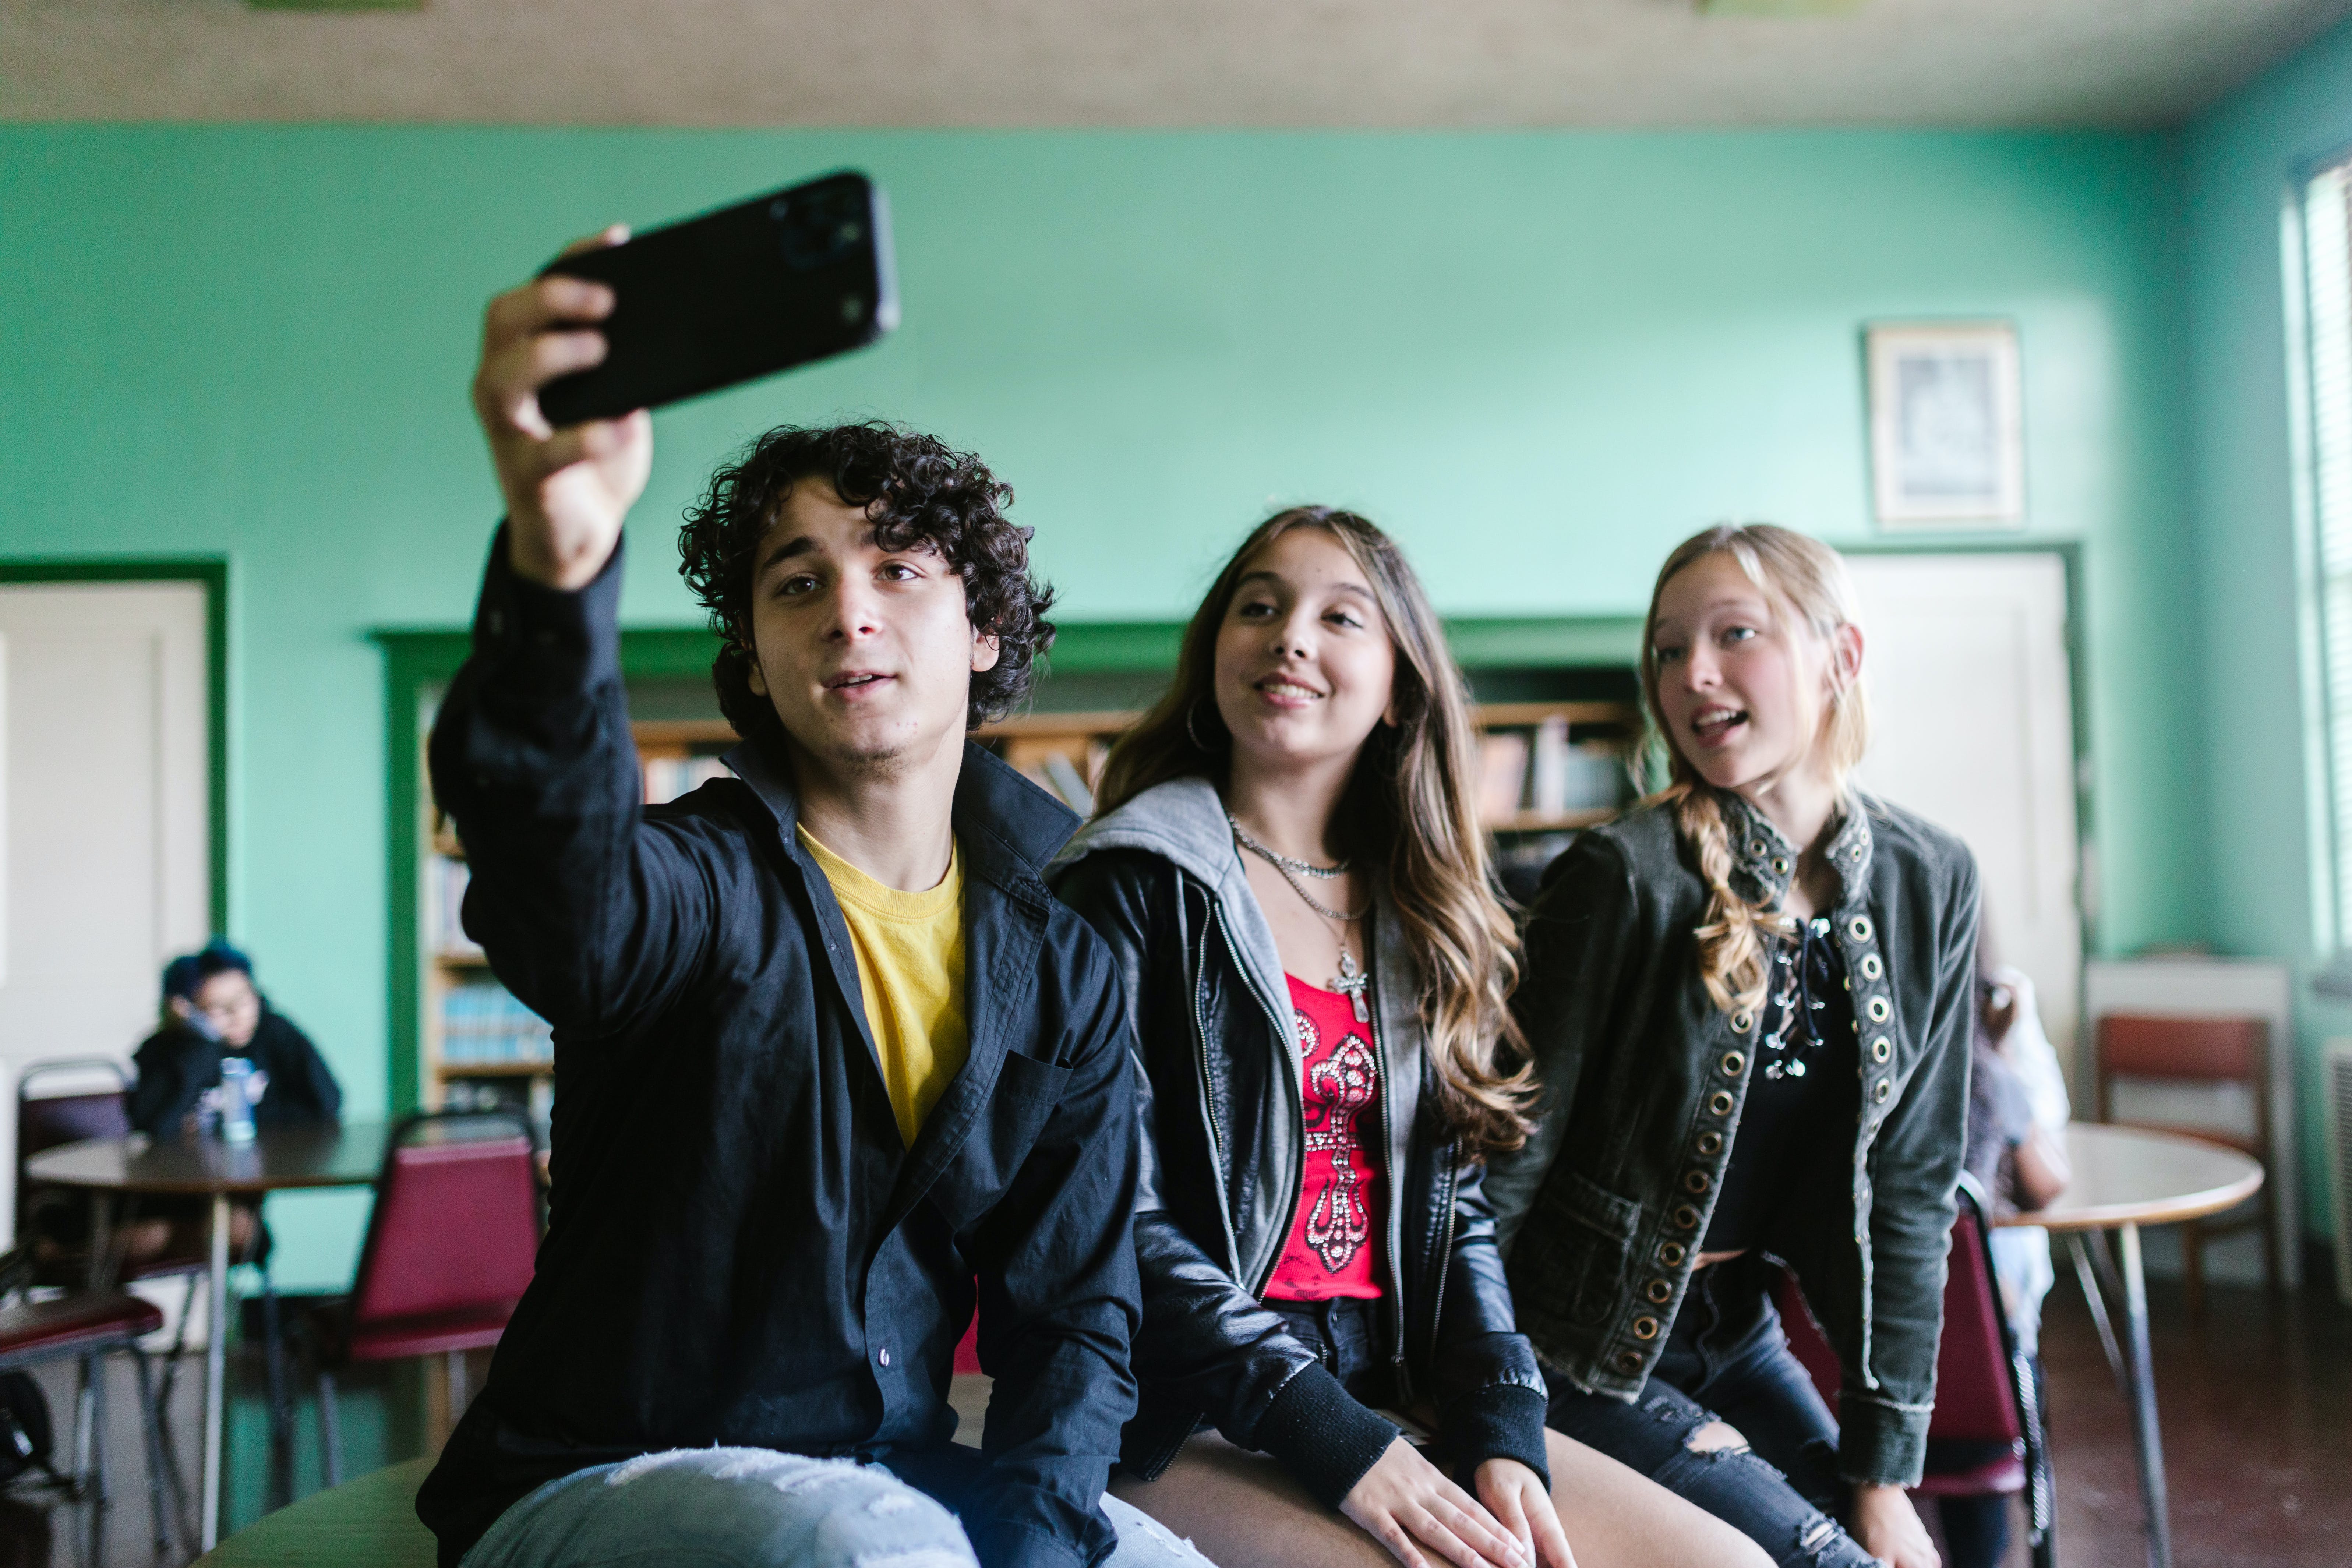 Un estudiante tomando una selfie junto a dos compañeras